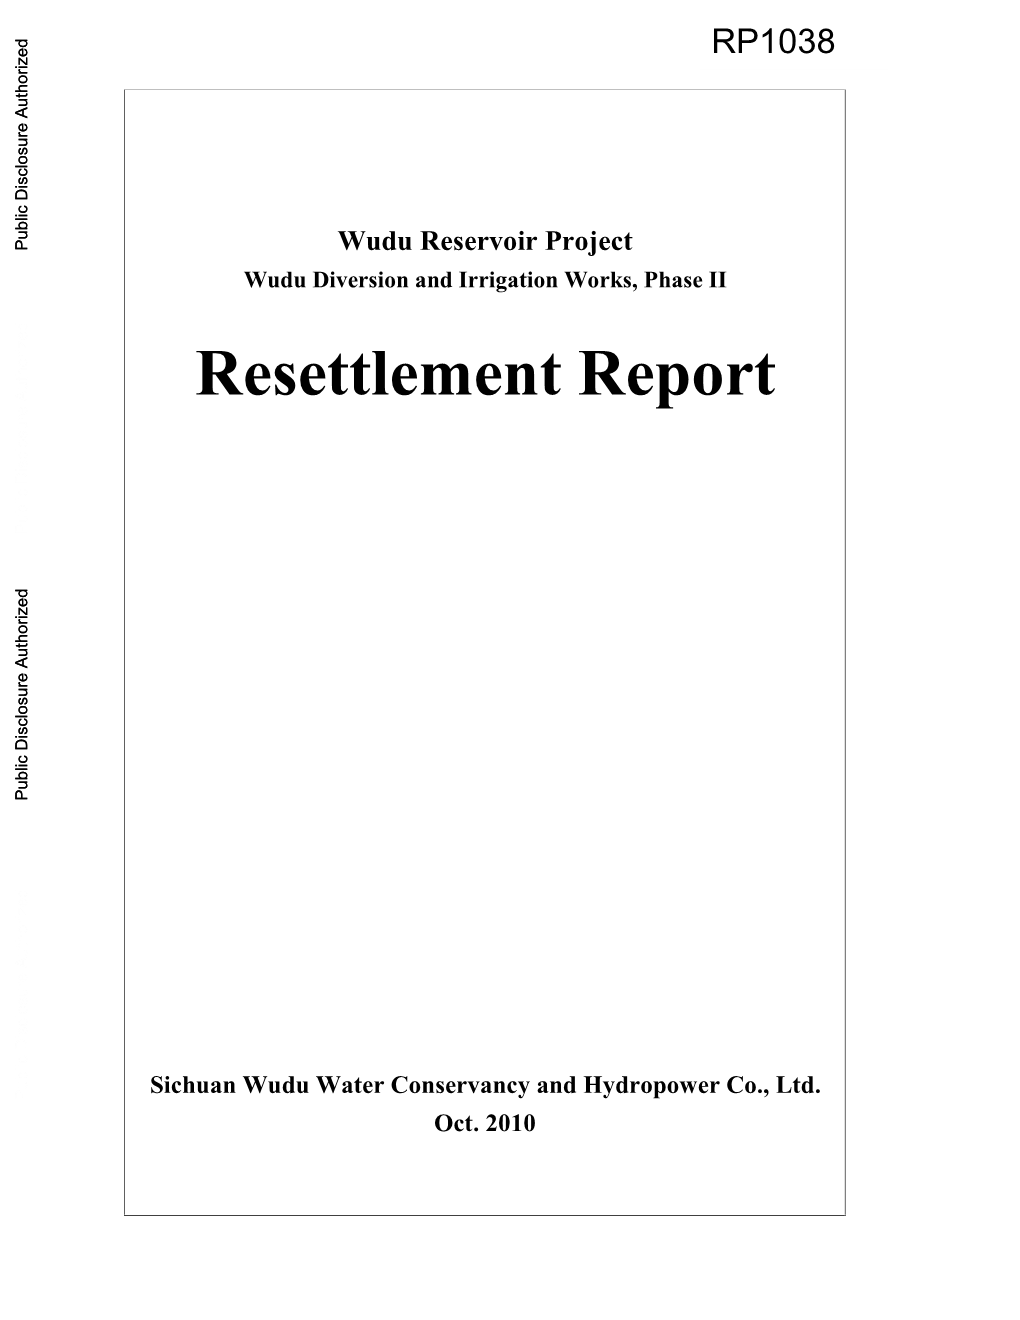 Resettlement Report Sichuan Wudu Water